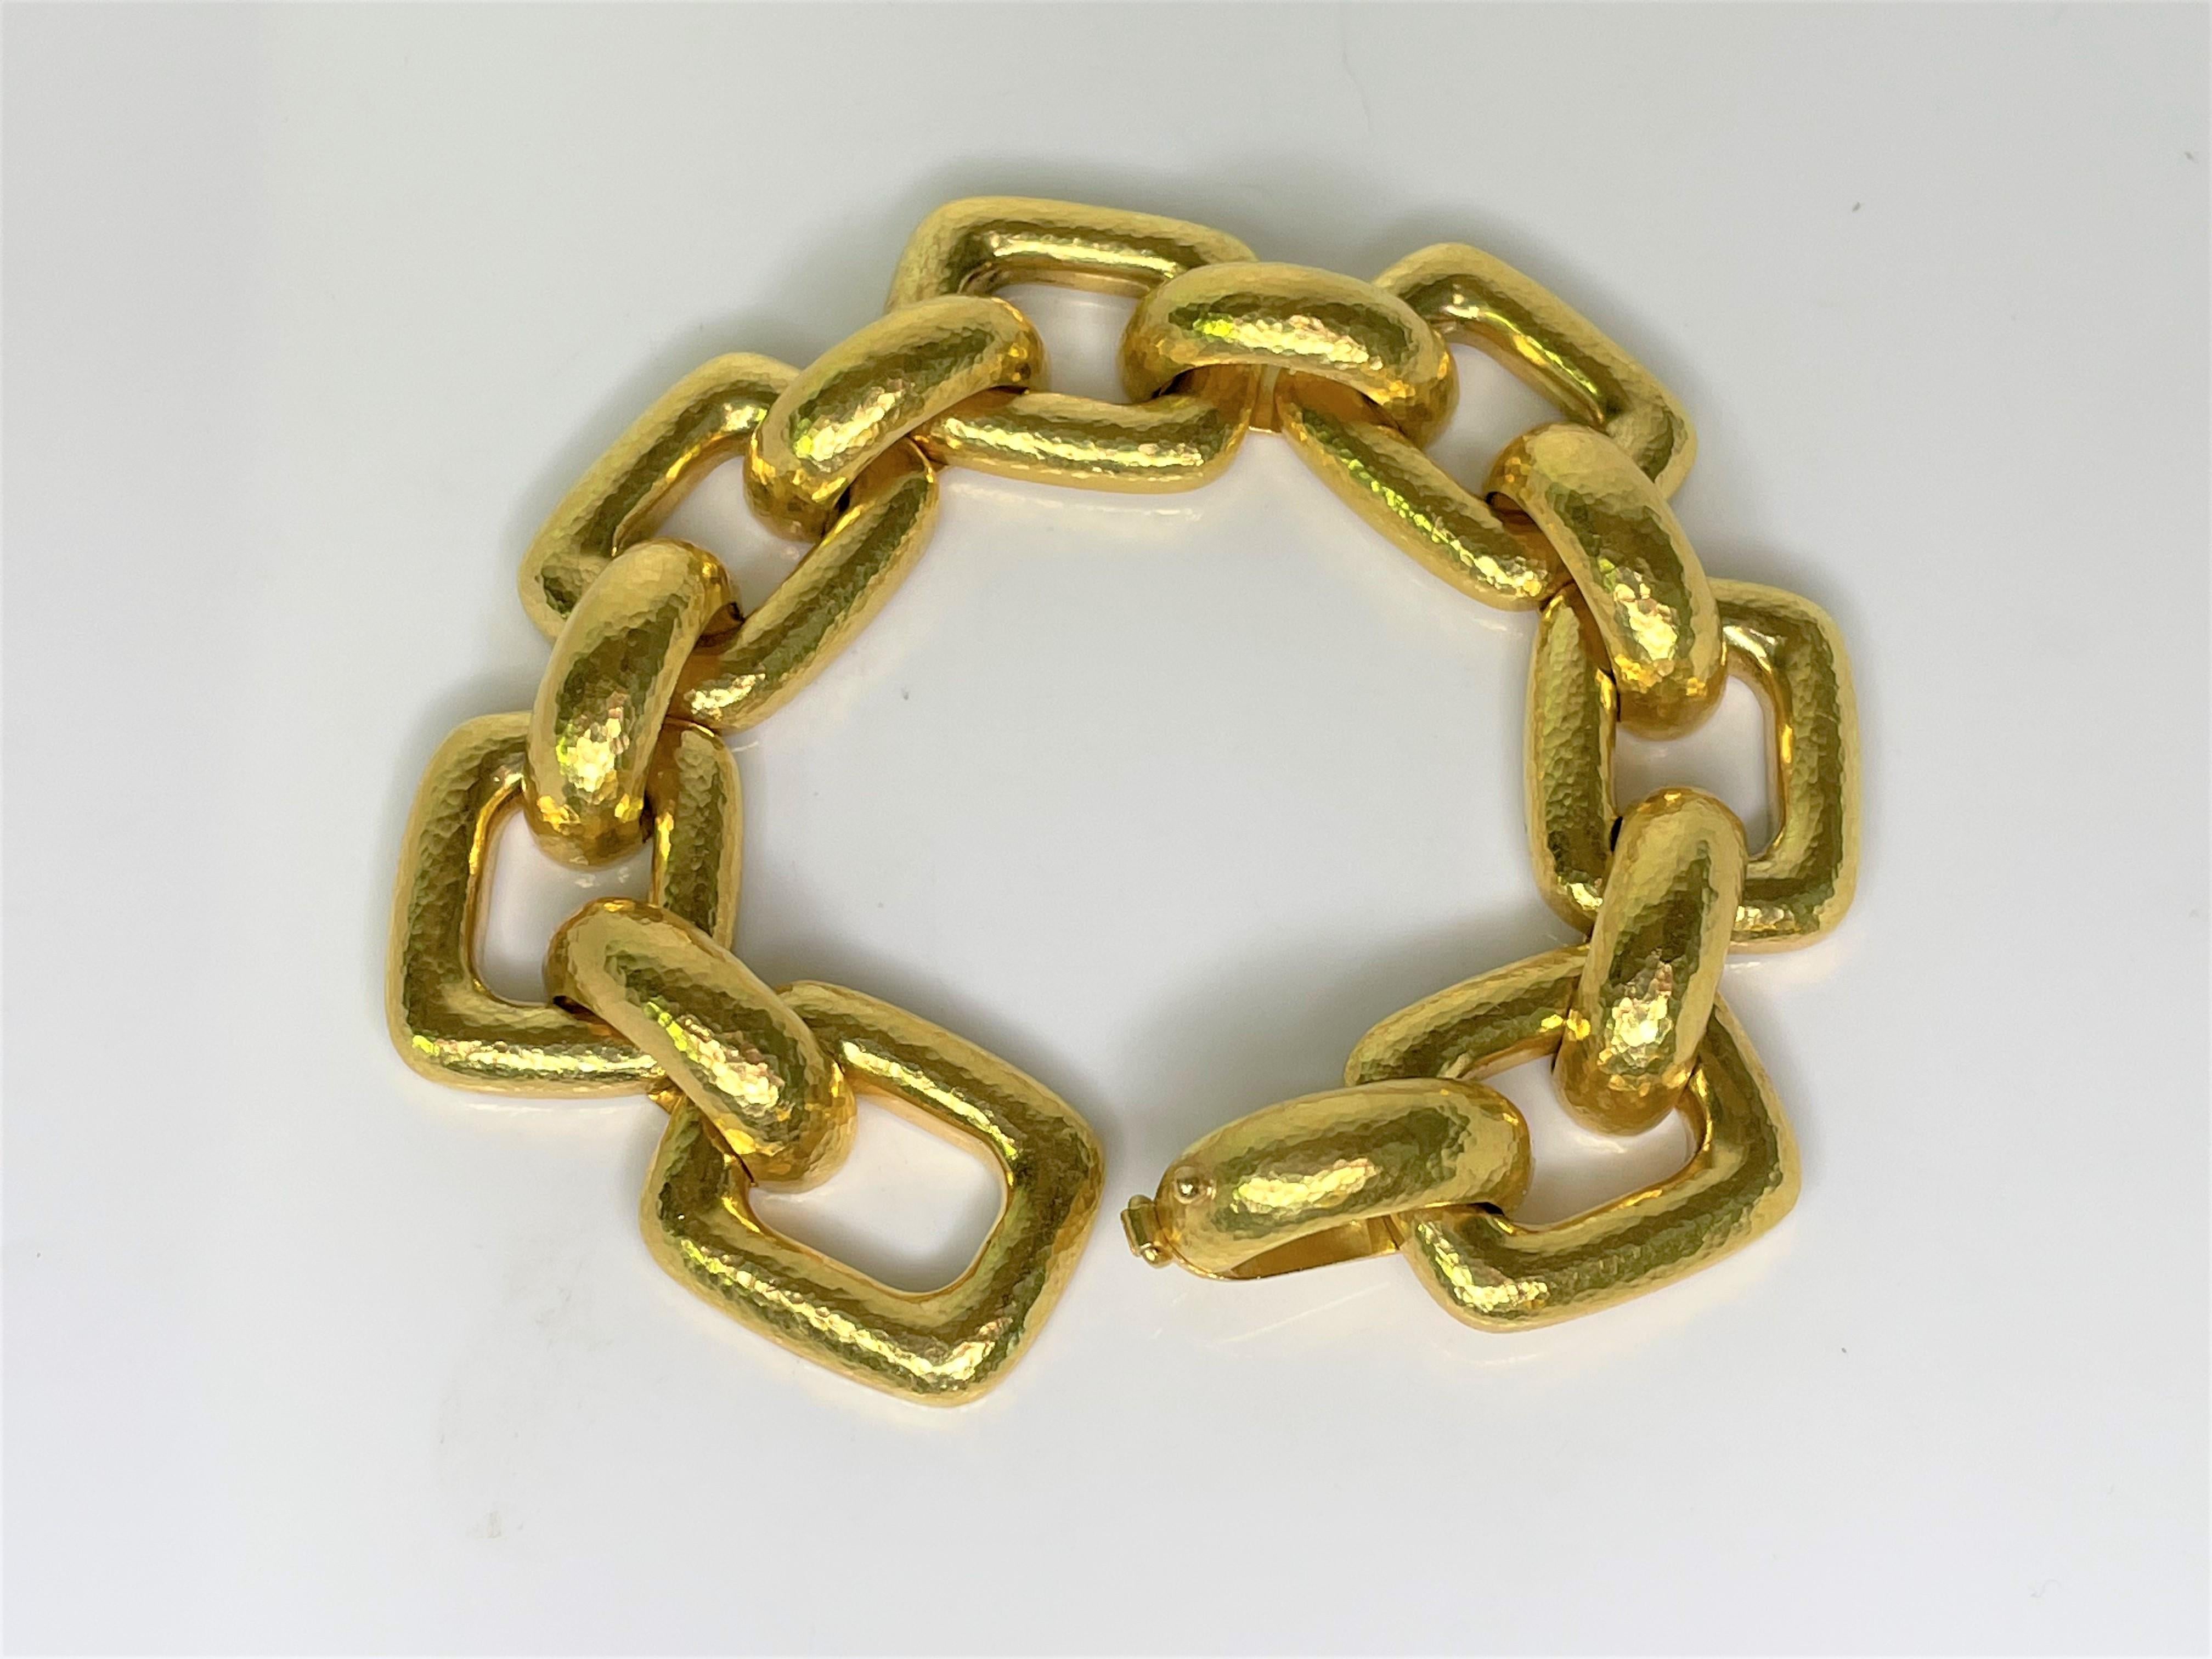 Par la designer Elizabeth Locke
Or jaune martelé massif de 19 carats.
8.25 pouces de long, 0.82 pouces de large
Estampillé 